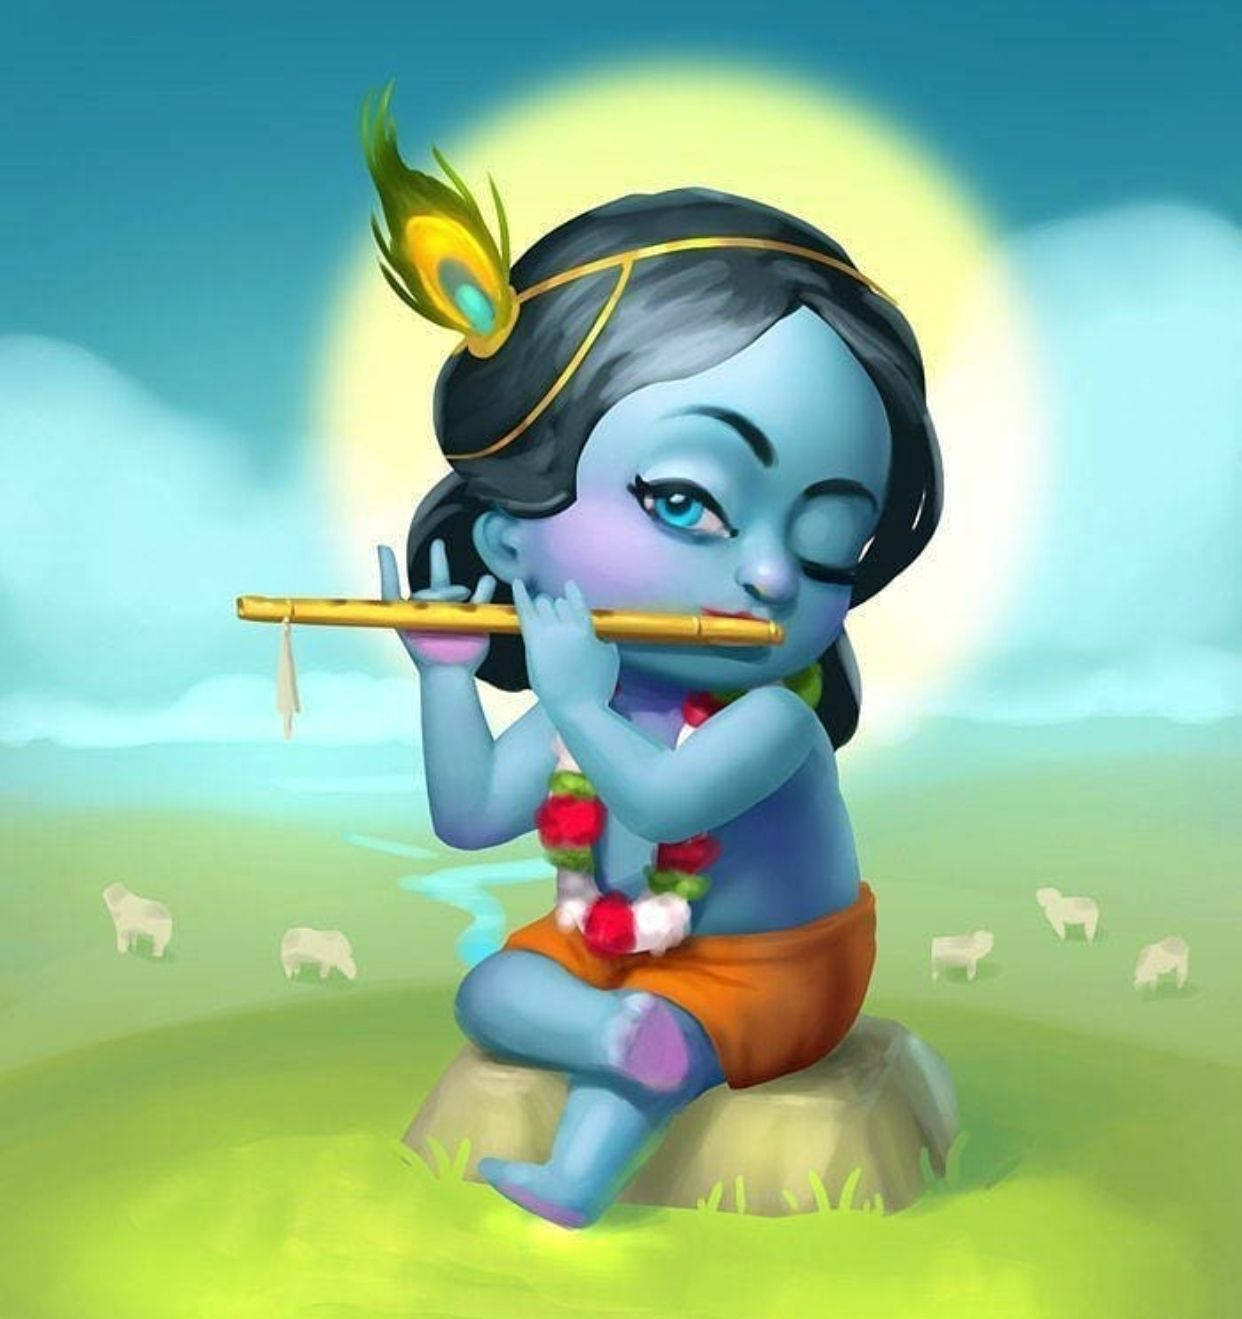 Download Cute Cartoon Krishna With Flute Wallpaper | Wallpapers.com